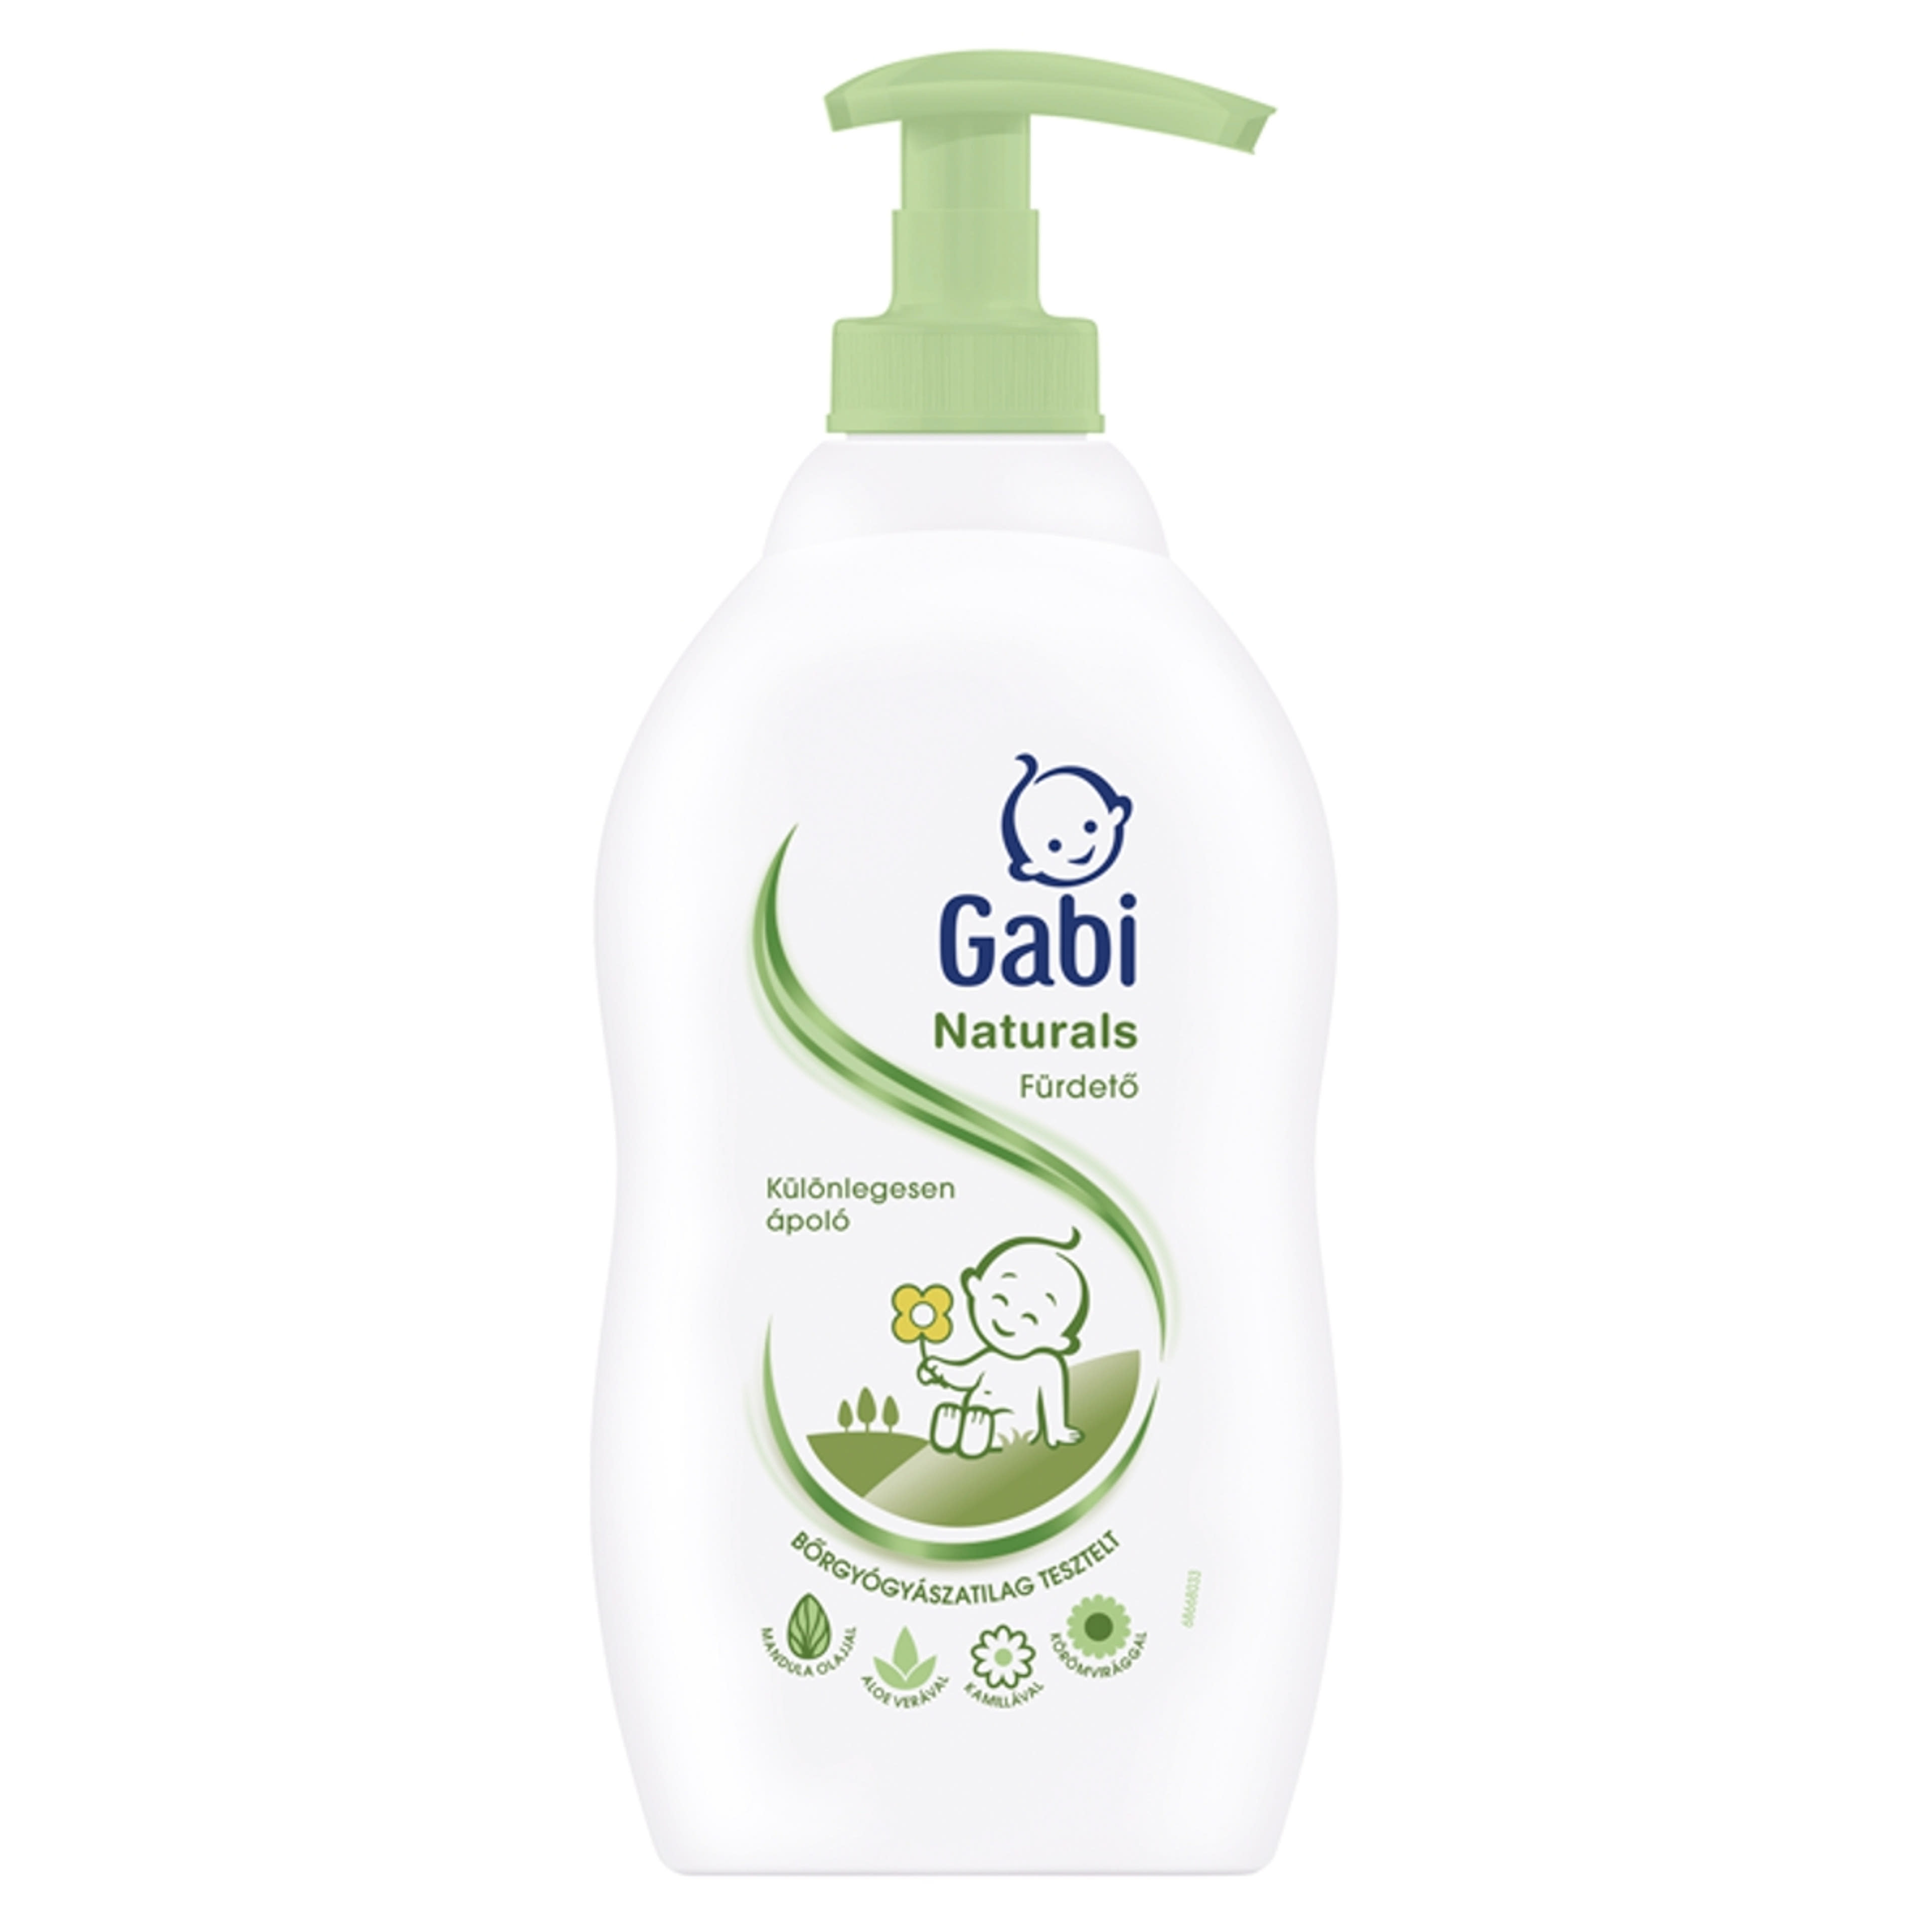 Gabi Naturals Fürdető - 400 ml